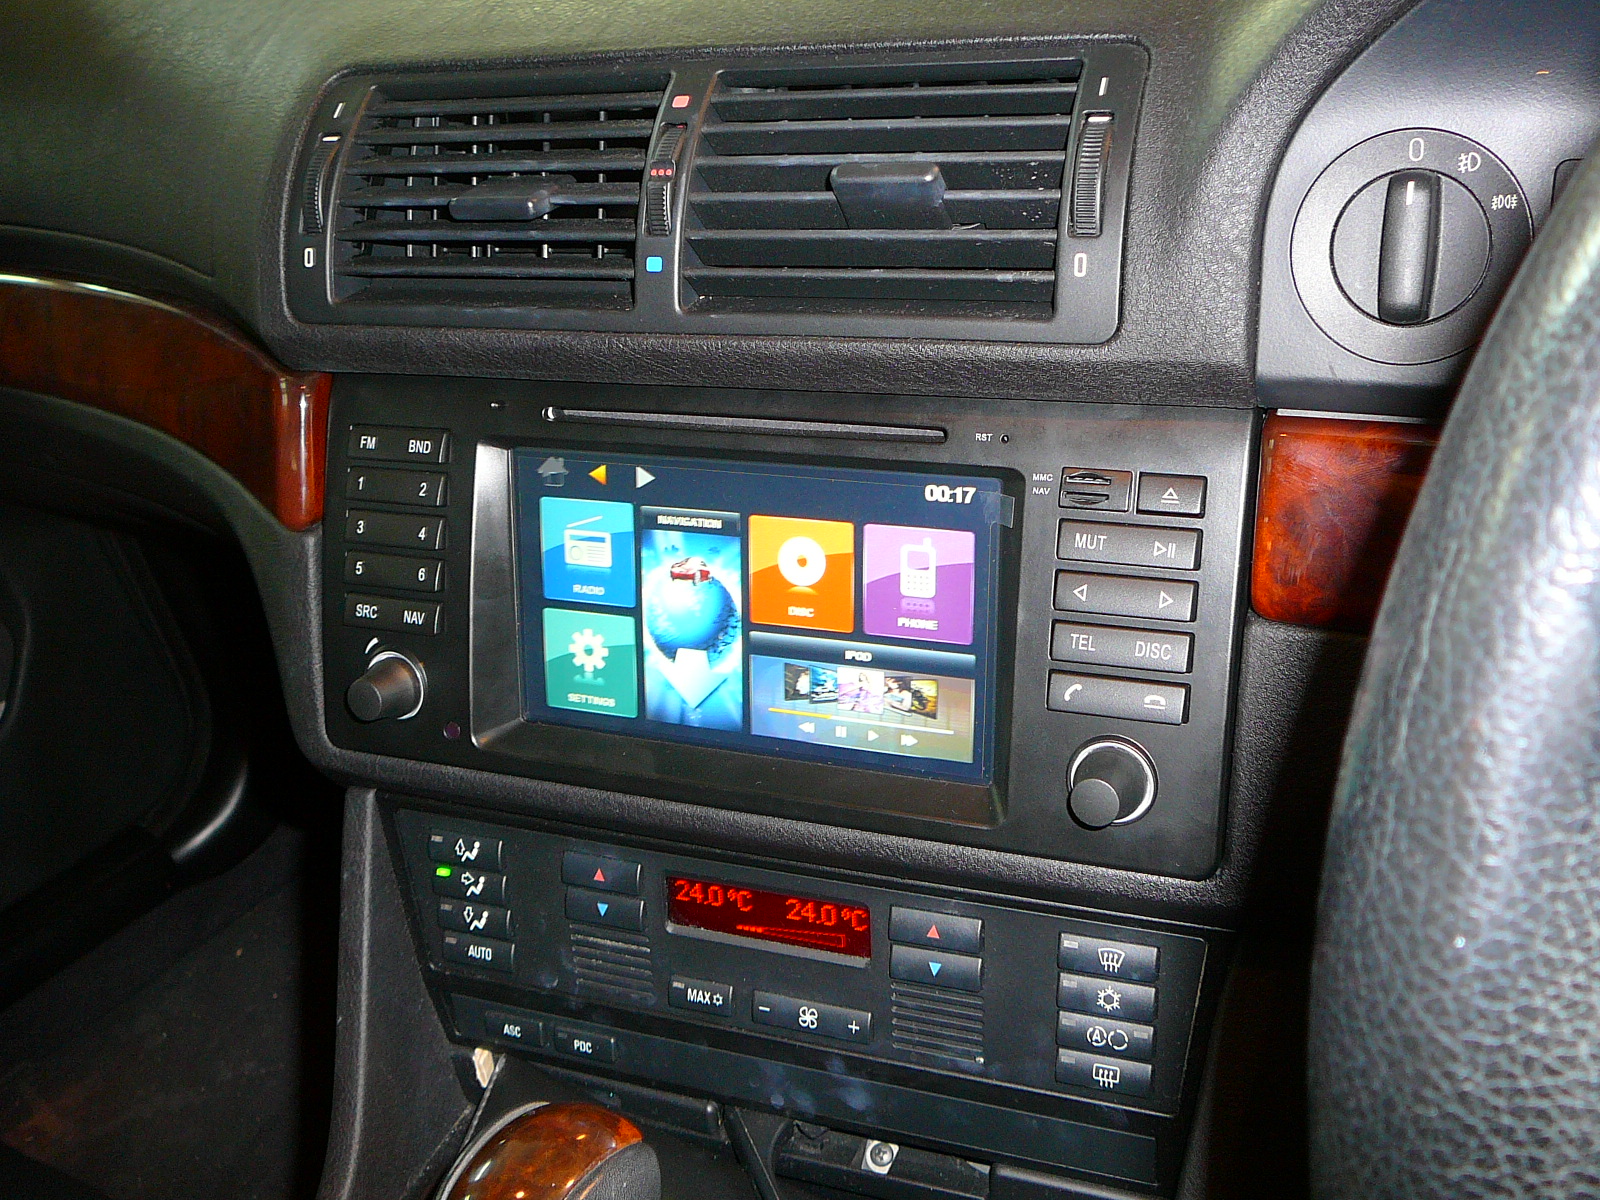 BMW E46, Novtron Indash GPS Navigation System